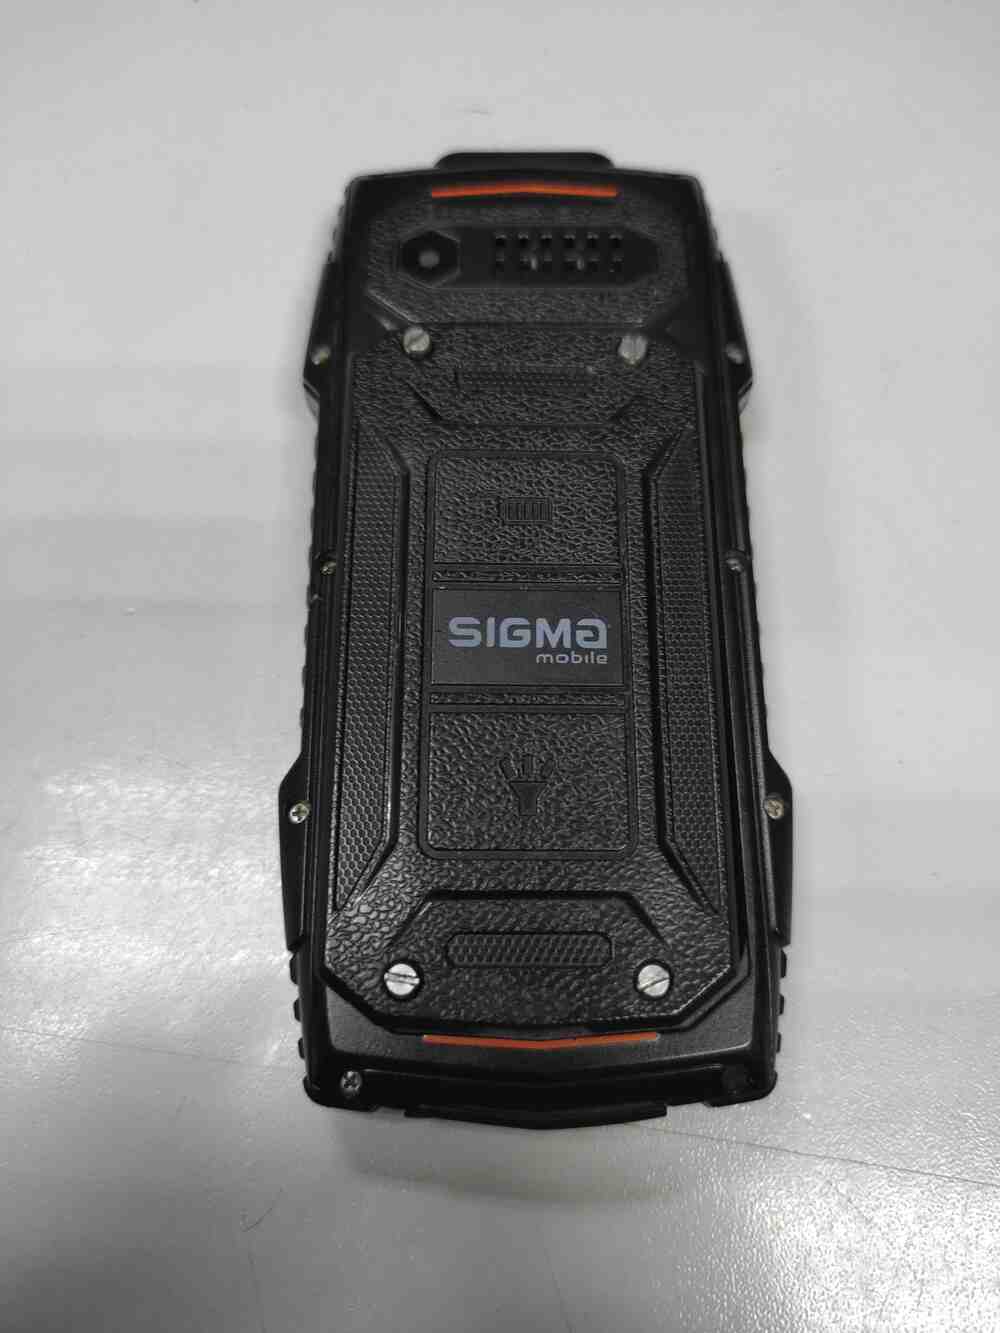 Sigma mobile X-treme AZ68 2